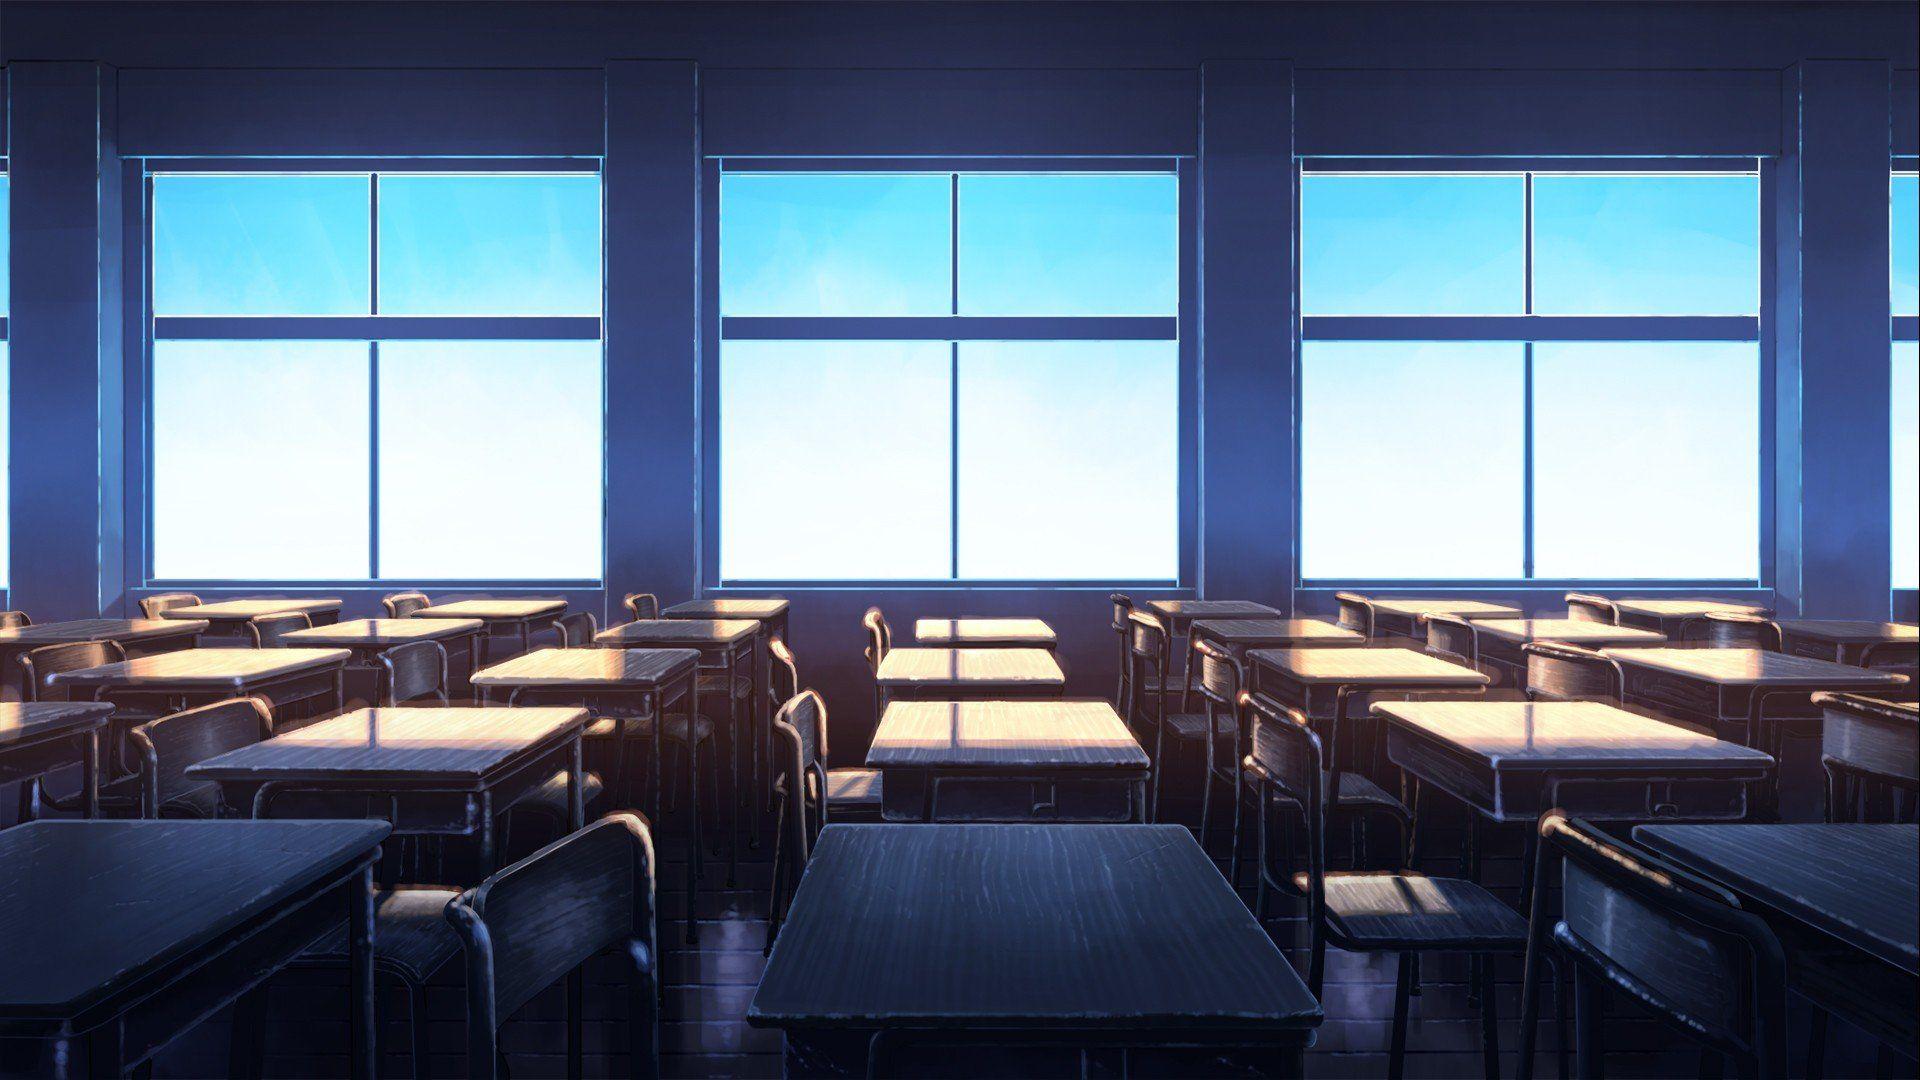 1920x1080 lớp học, Bầu trời quang đãng, Nghệ thuật anime Hình nền HD / Hình ảnh & Hình ảnh trên máy tính để bàn và điện thoại di động